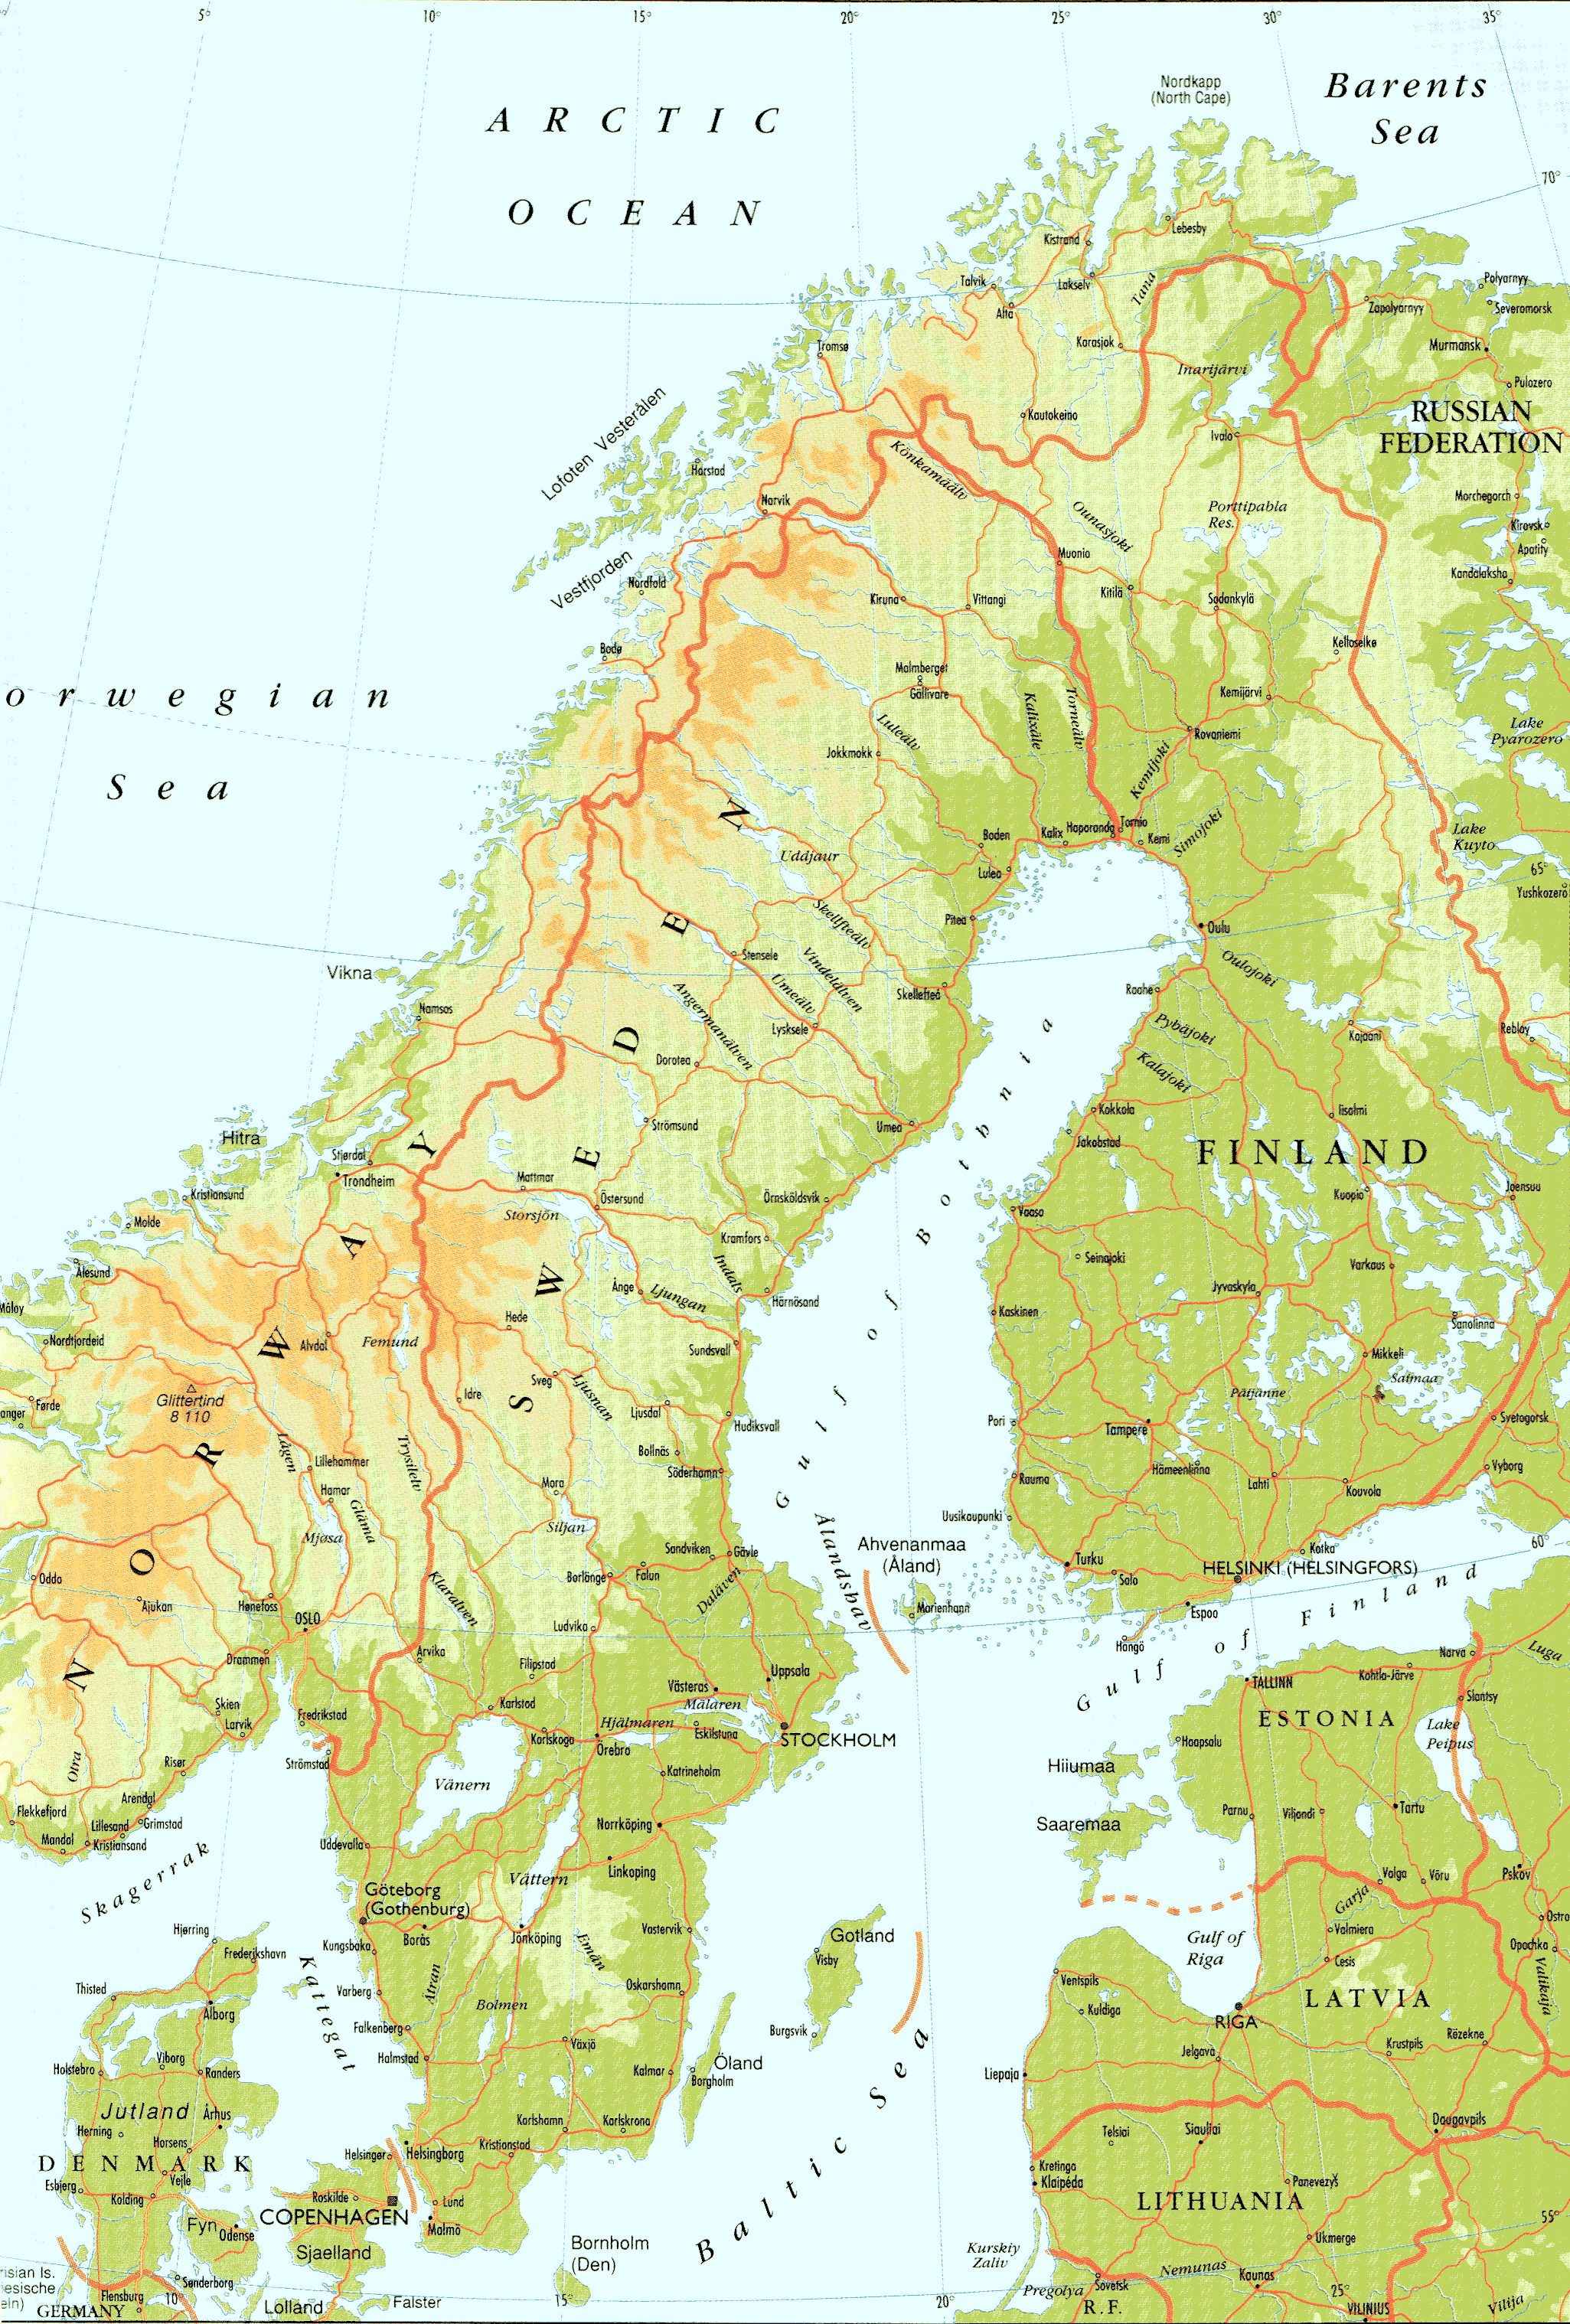 karta norveske sa gradovima ŠVEDSKA Karta Švedske – Autokarta – Zemljovid | Gorila karta norveske sa gradovima